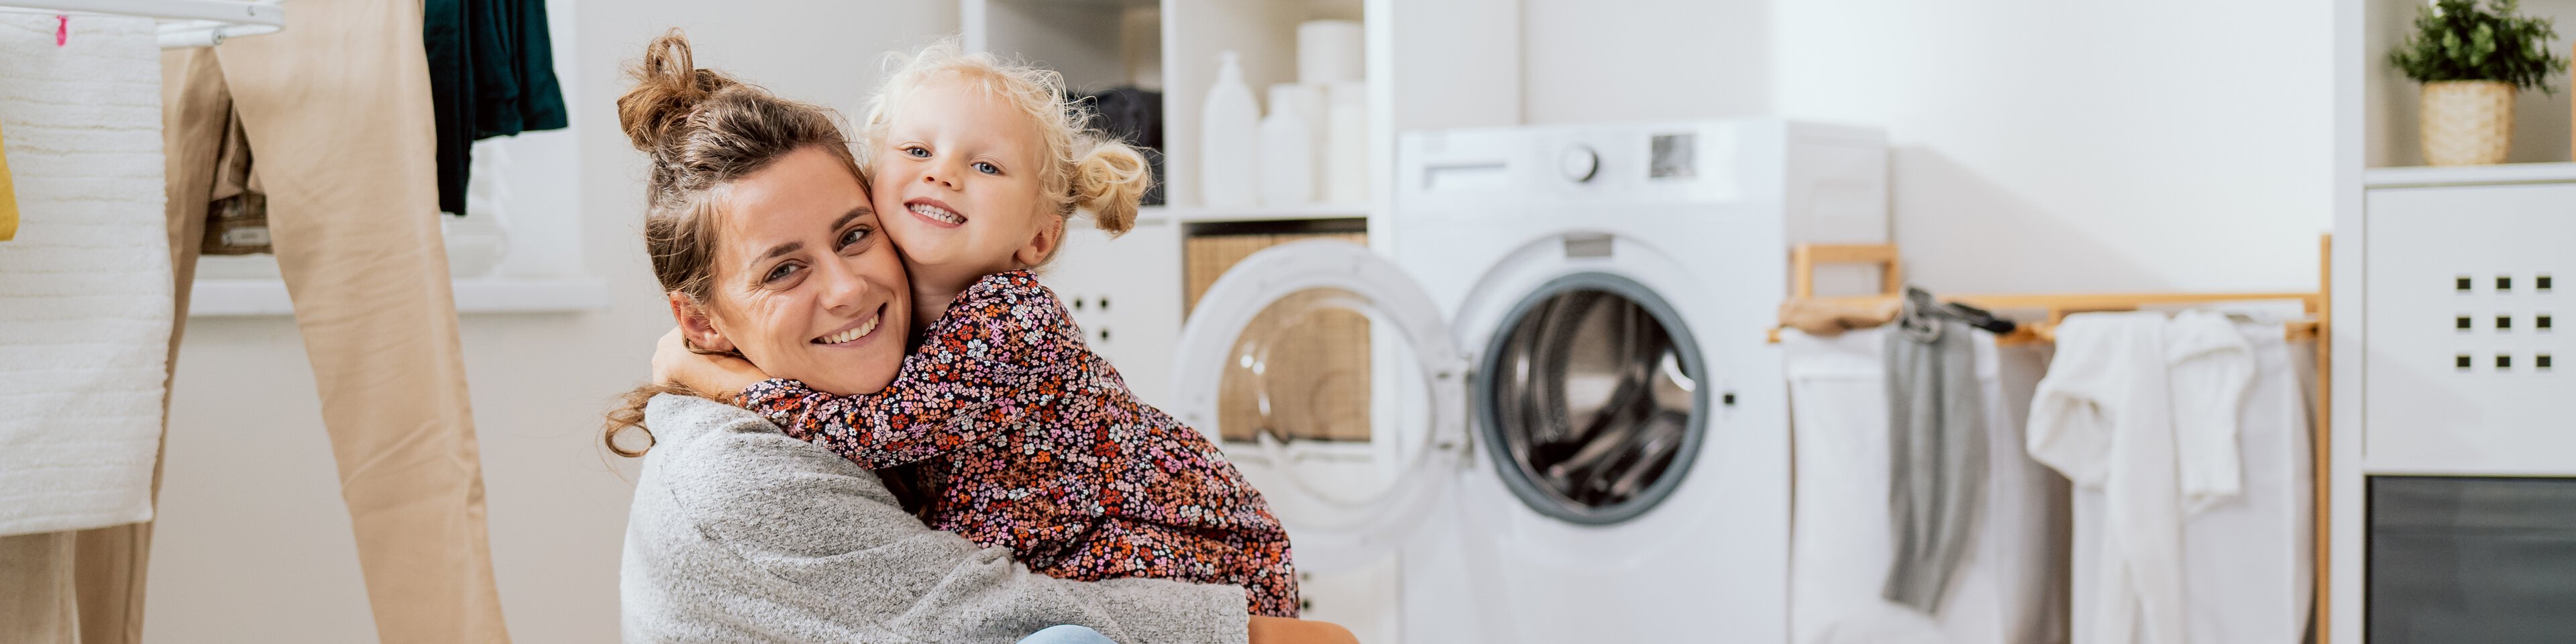 Eine Frau sitzt mir ihrem Kind auf dem Boden neben einem vollen Wäschekorb und vor einer Waschmaschine | © bpilewski - ABCreative - stock.adobe.com